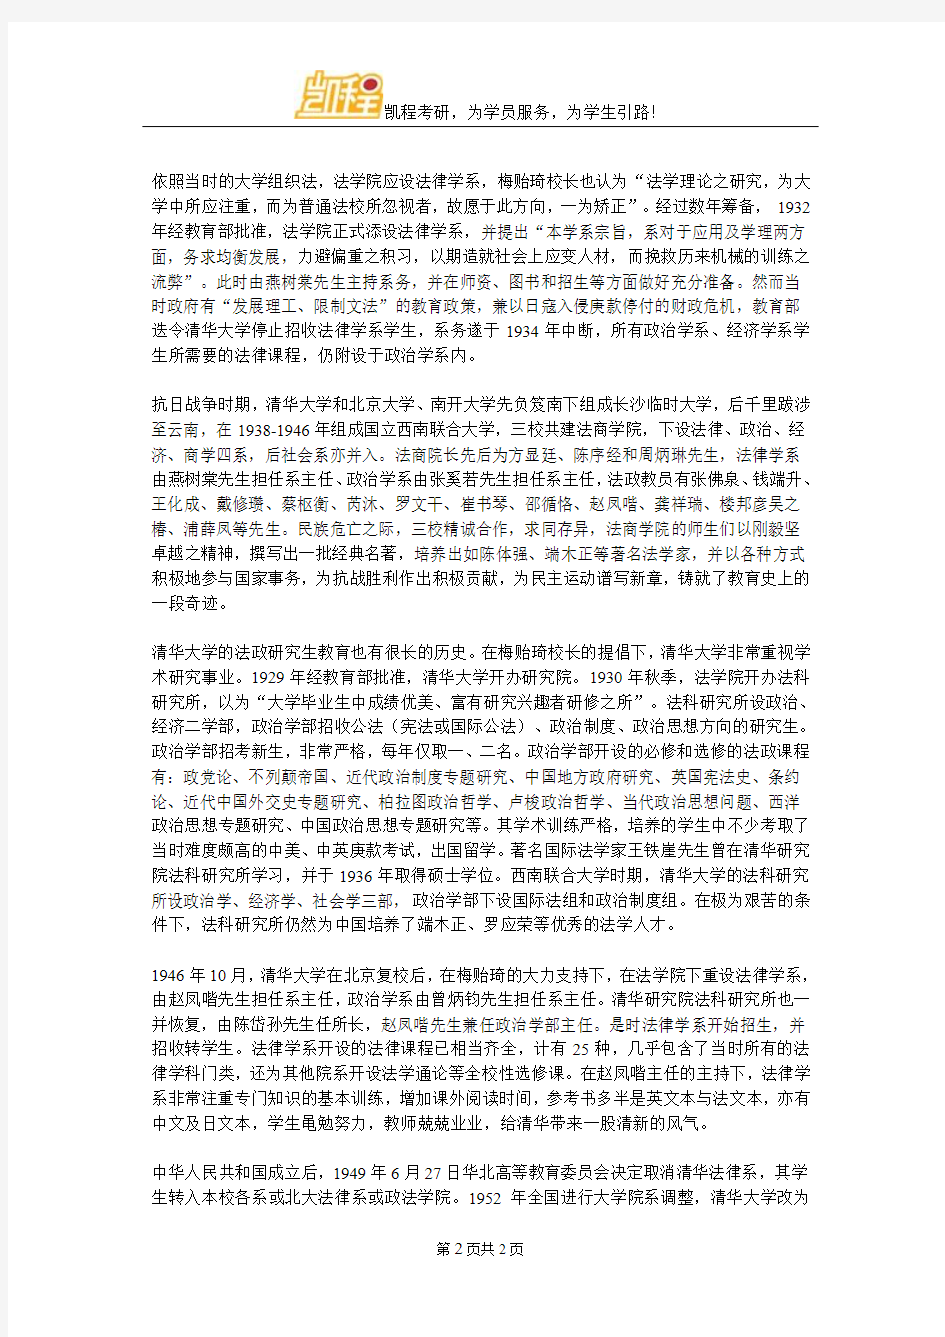 清华法学院历史沿革